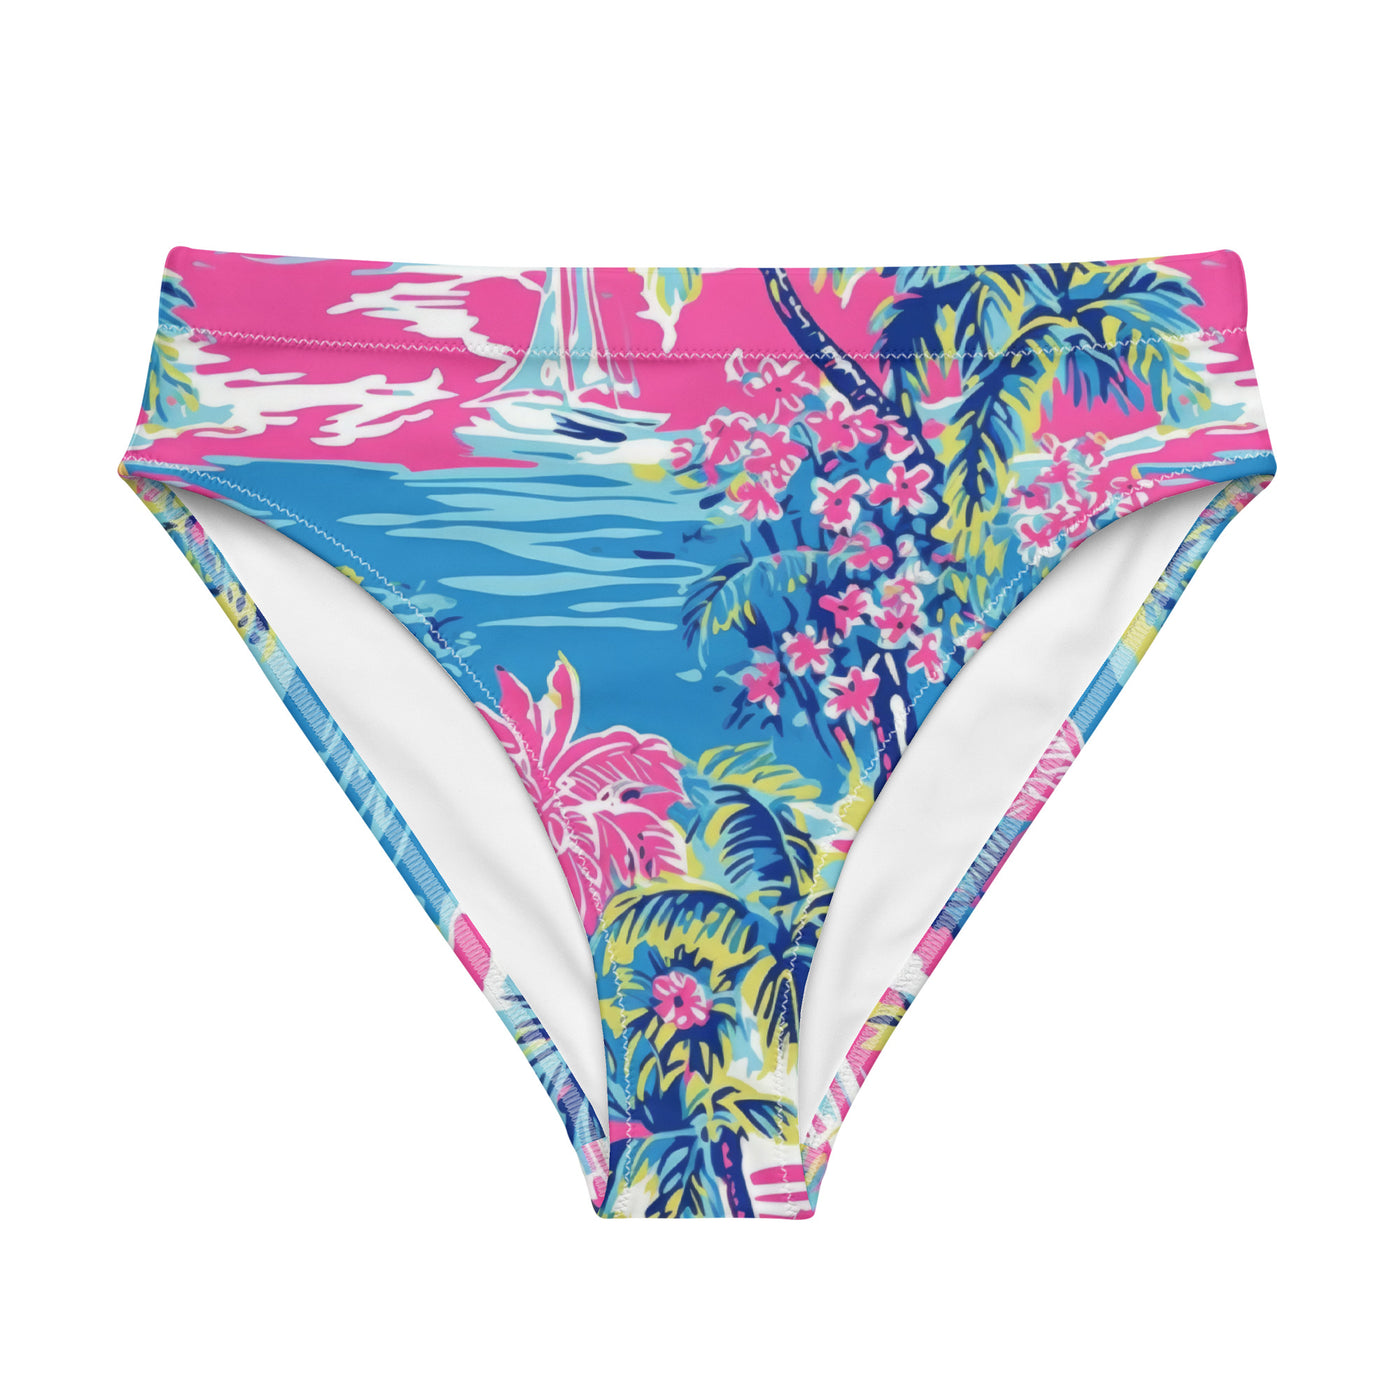 Zero Worries Bikini Bottom - Coastal Cool - Swimwear and Beachwear - Recycled fabrics